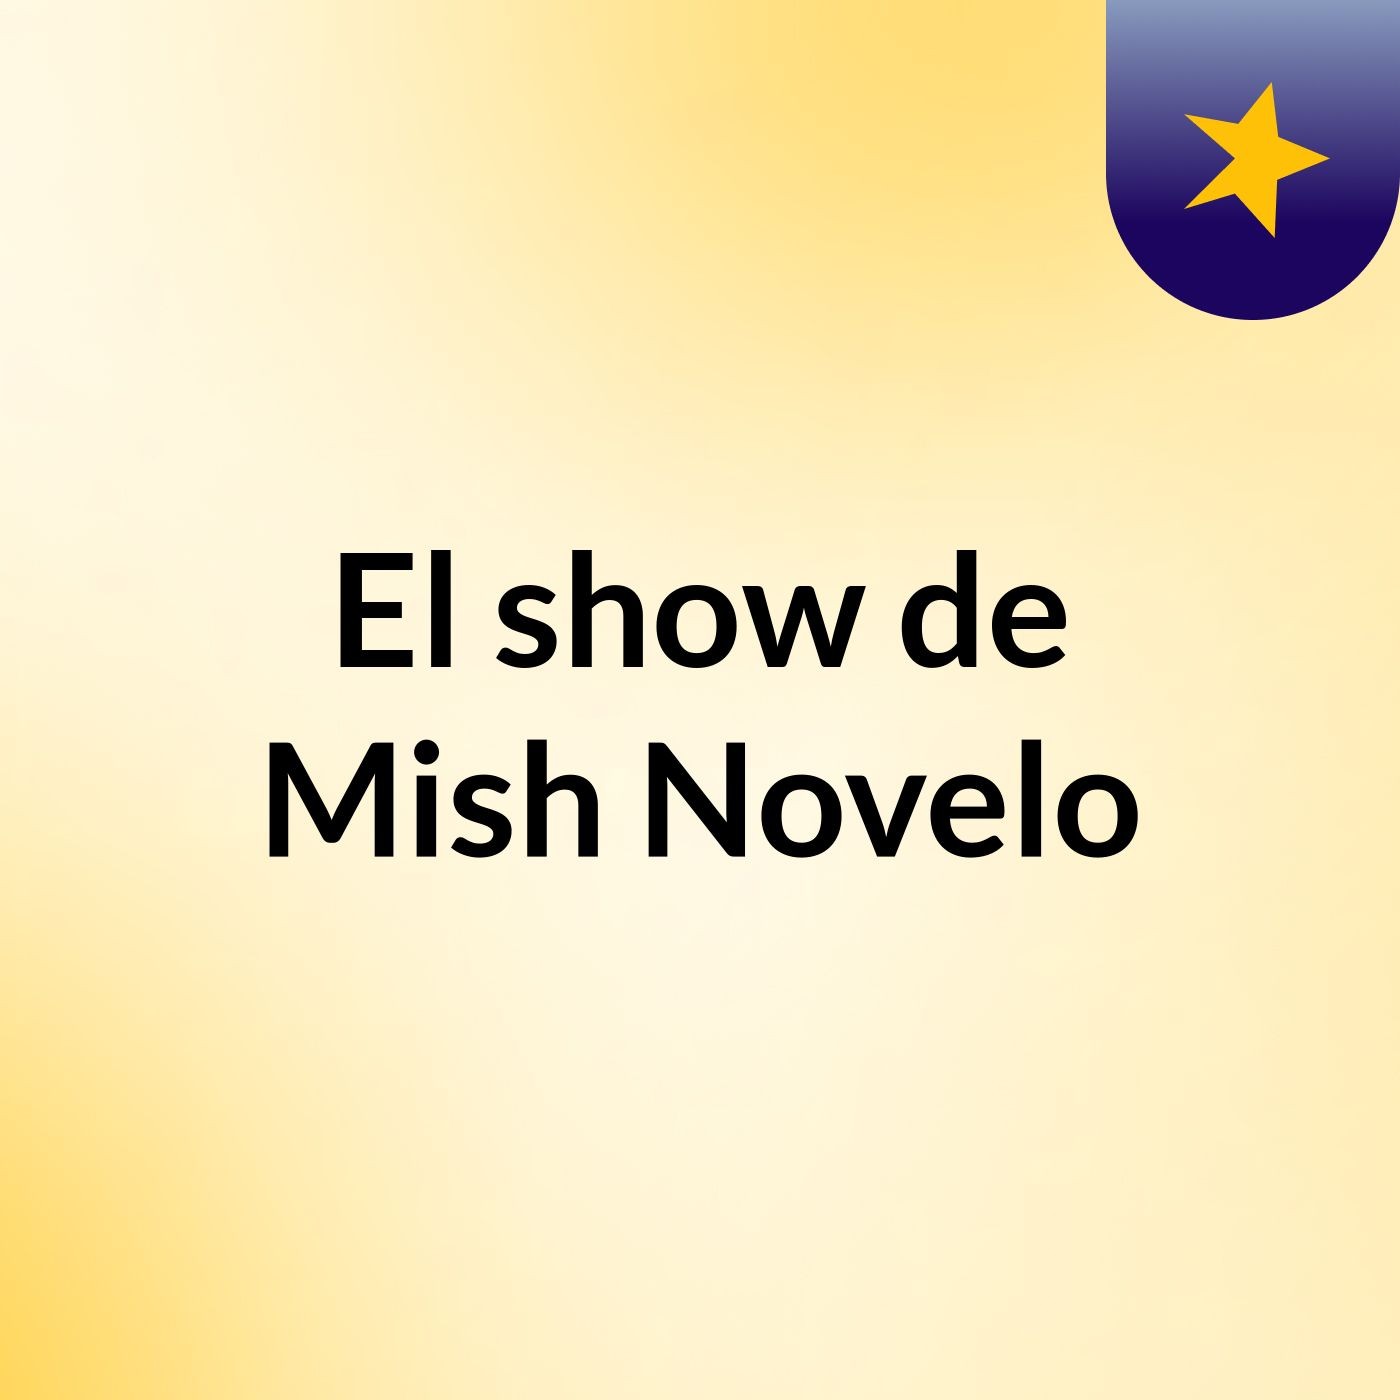 El show de Mish Novelo